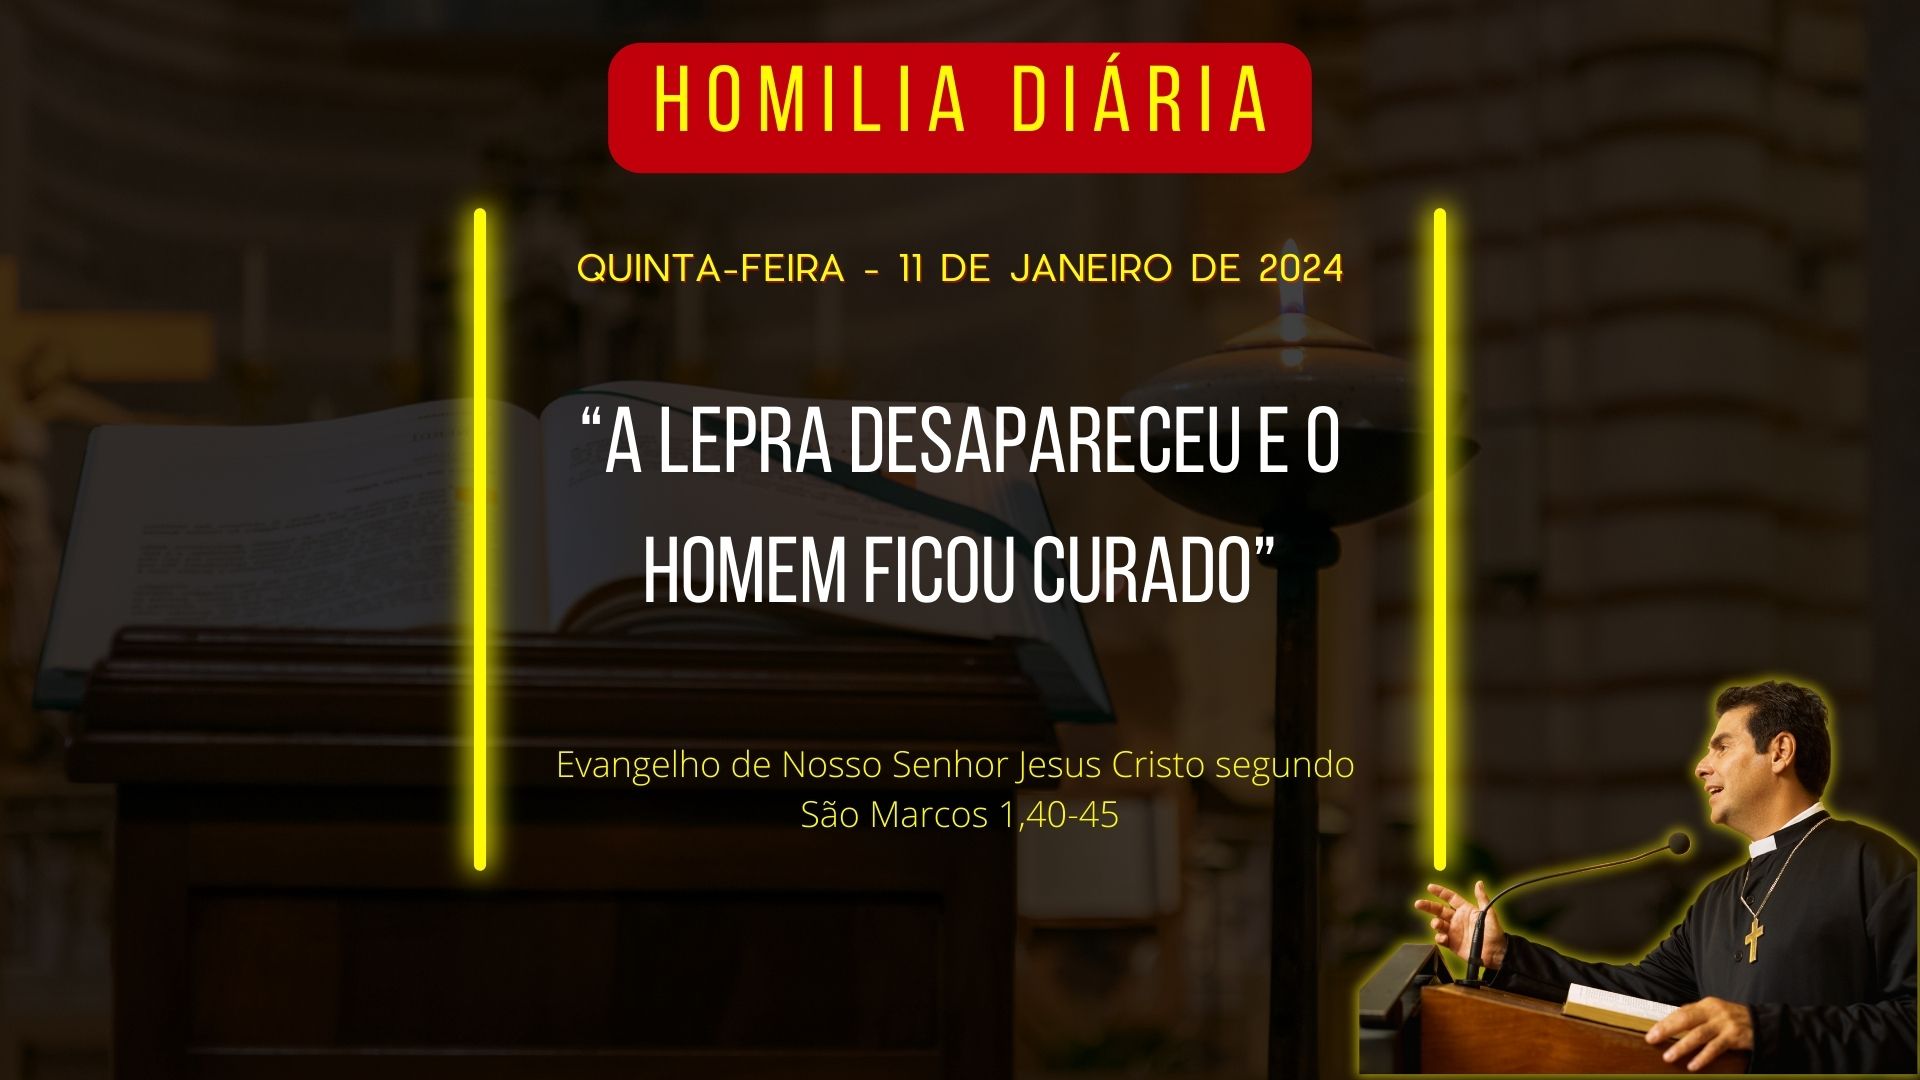 Homilia Diária - Evangelho do dia 11/01/24